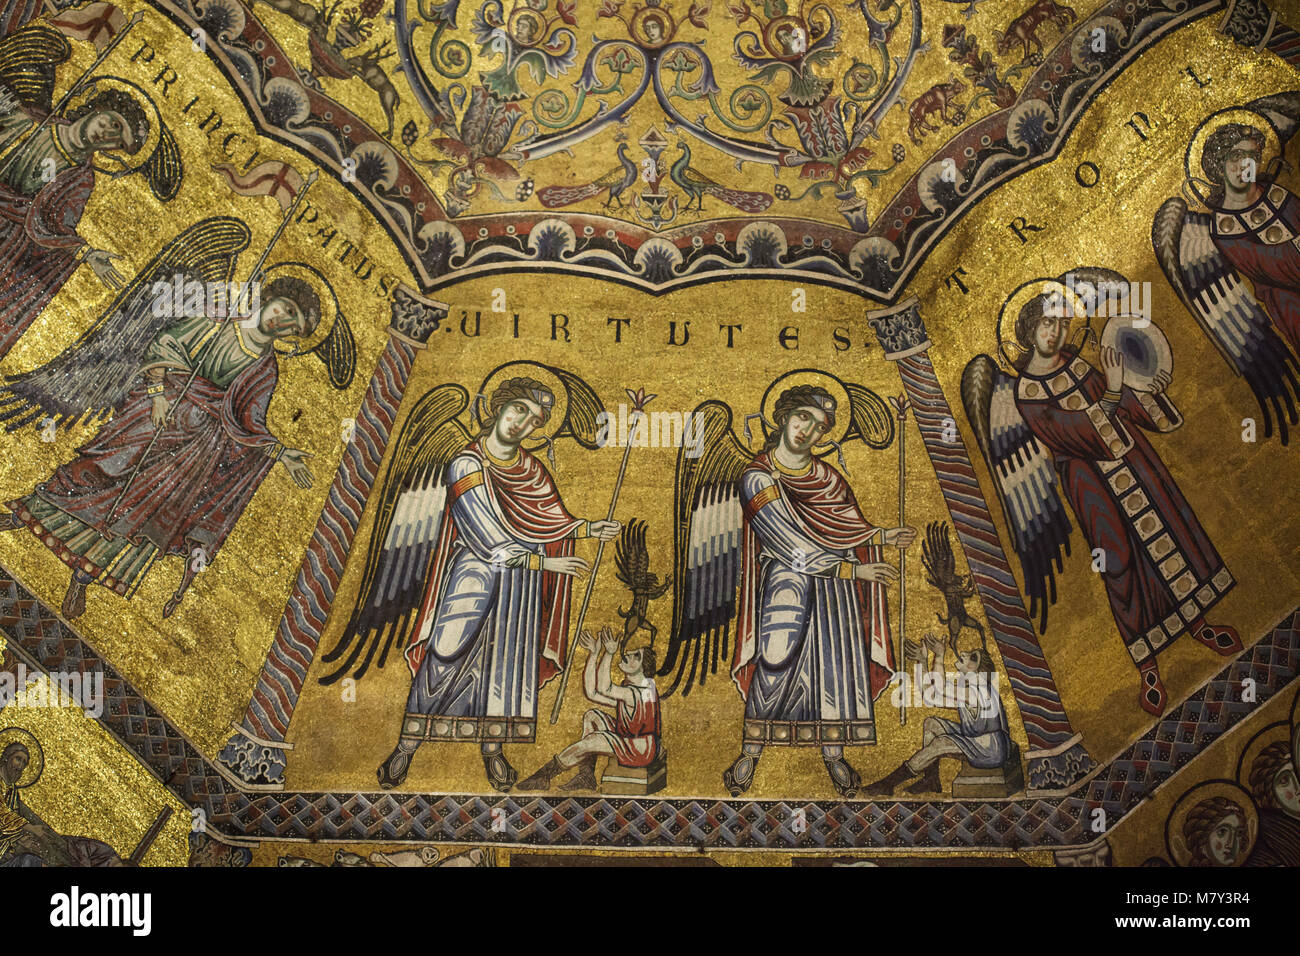 Die Chöre der Engel im mittelalterlichen Mosaiken aus dem 13. Jahrhundert dargestellt in der achteckigen Kuppel in der Battistero di San Giovanni (Florenz Baptisterium) in Florenz, Toskana, Italien. Stockfoto